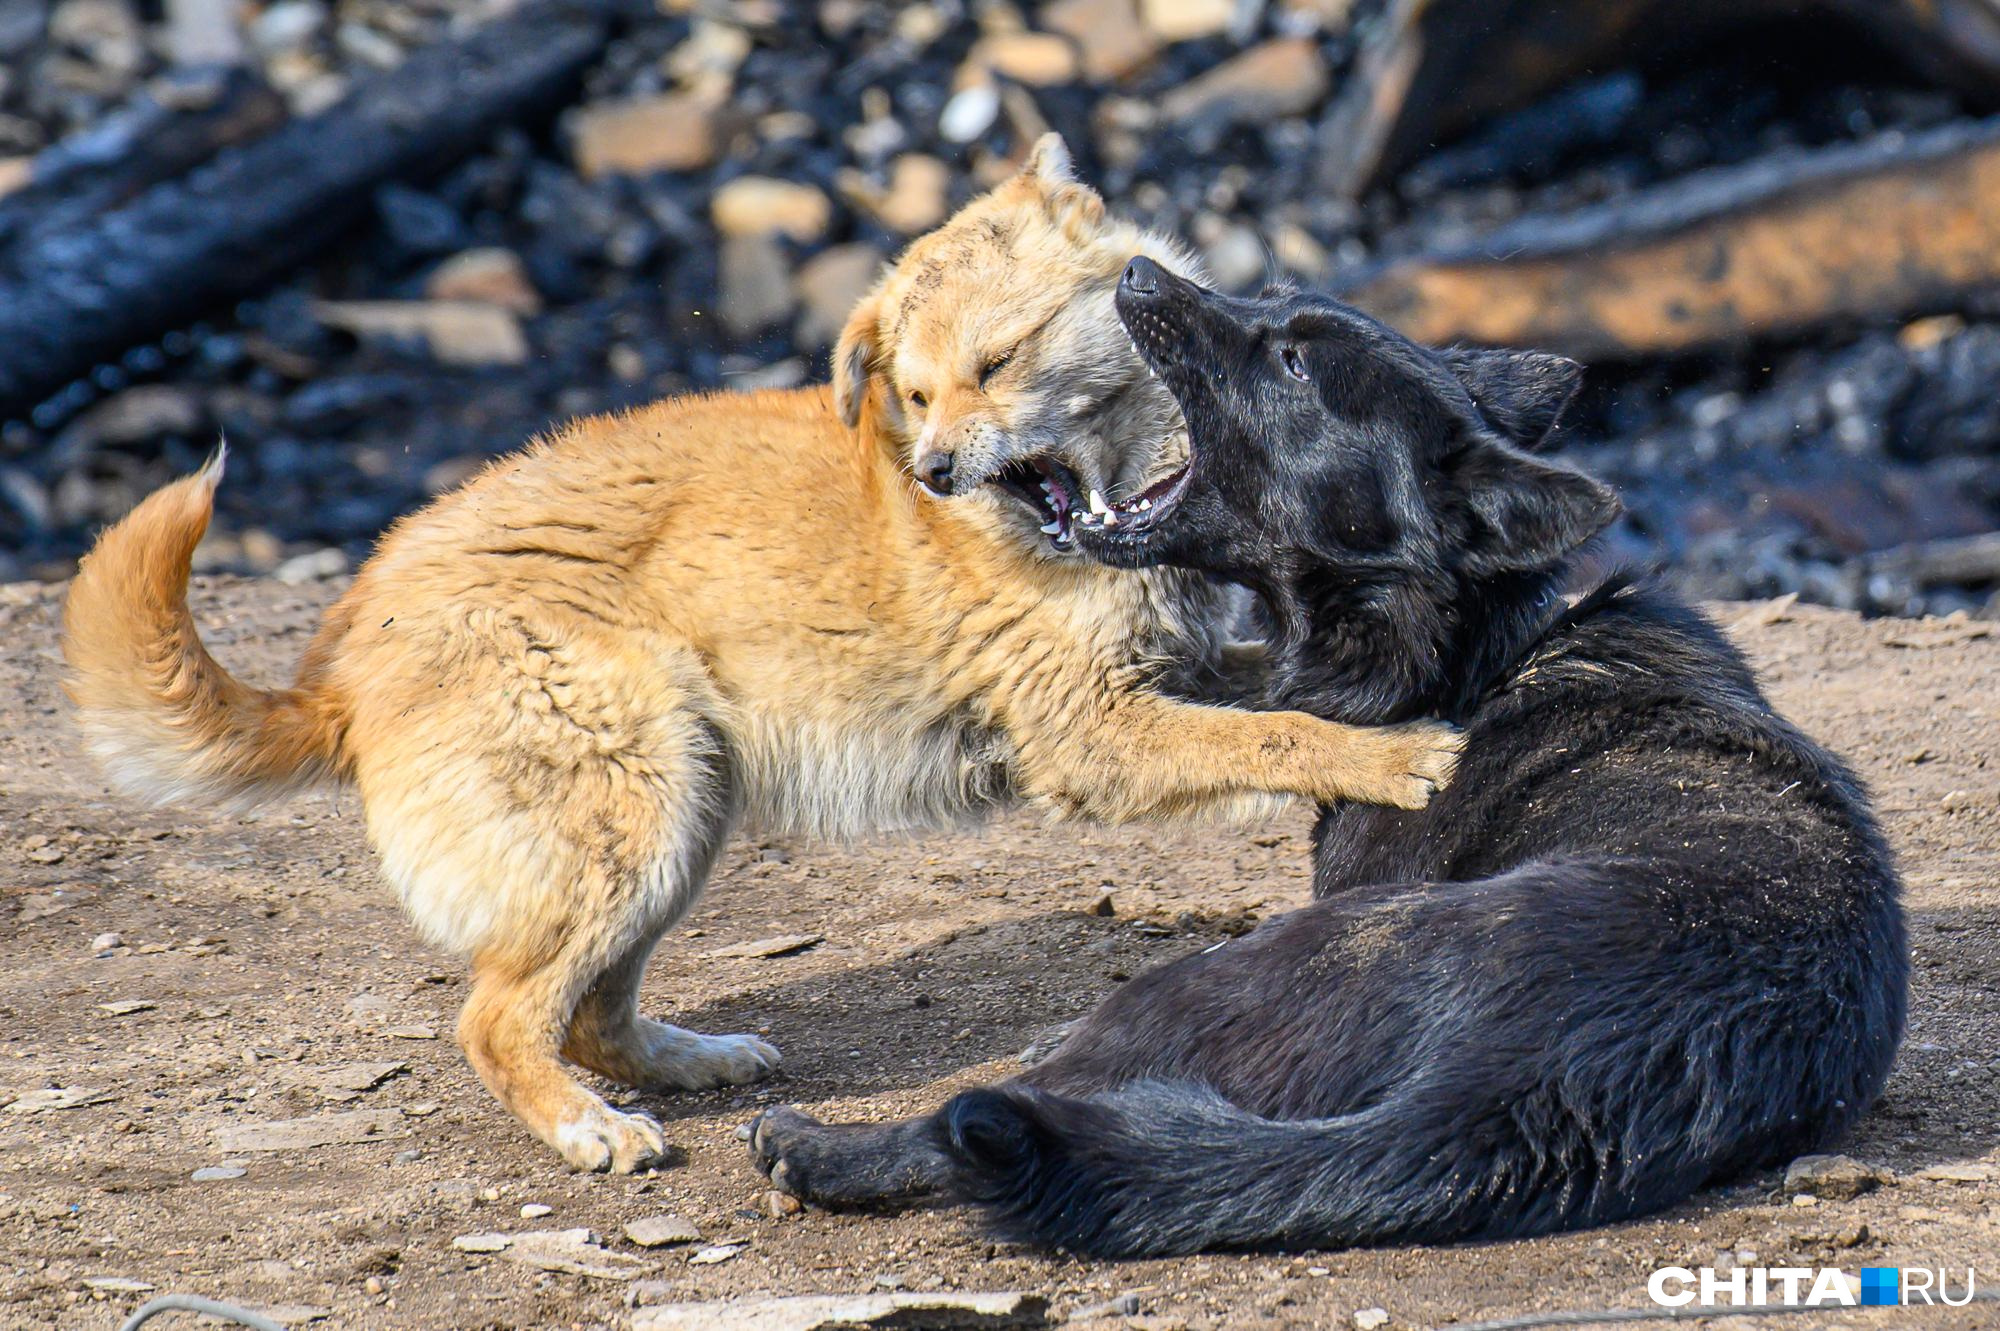 Сити-менеджер Читы поддержала закон о гуманной эвтаназии бродячих собак